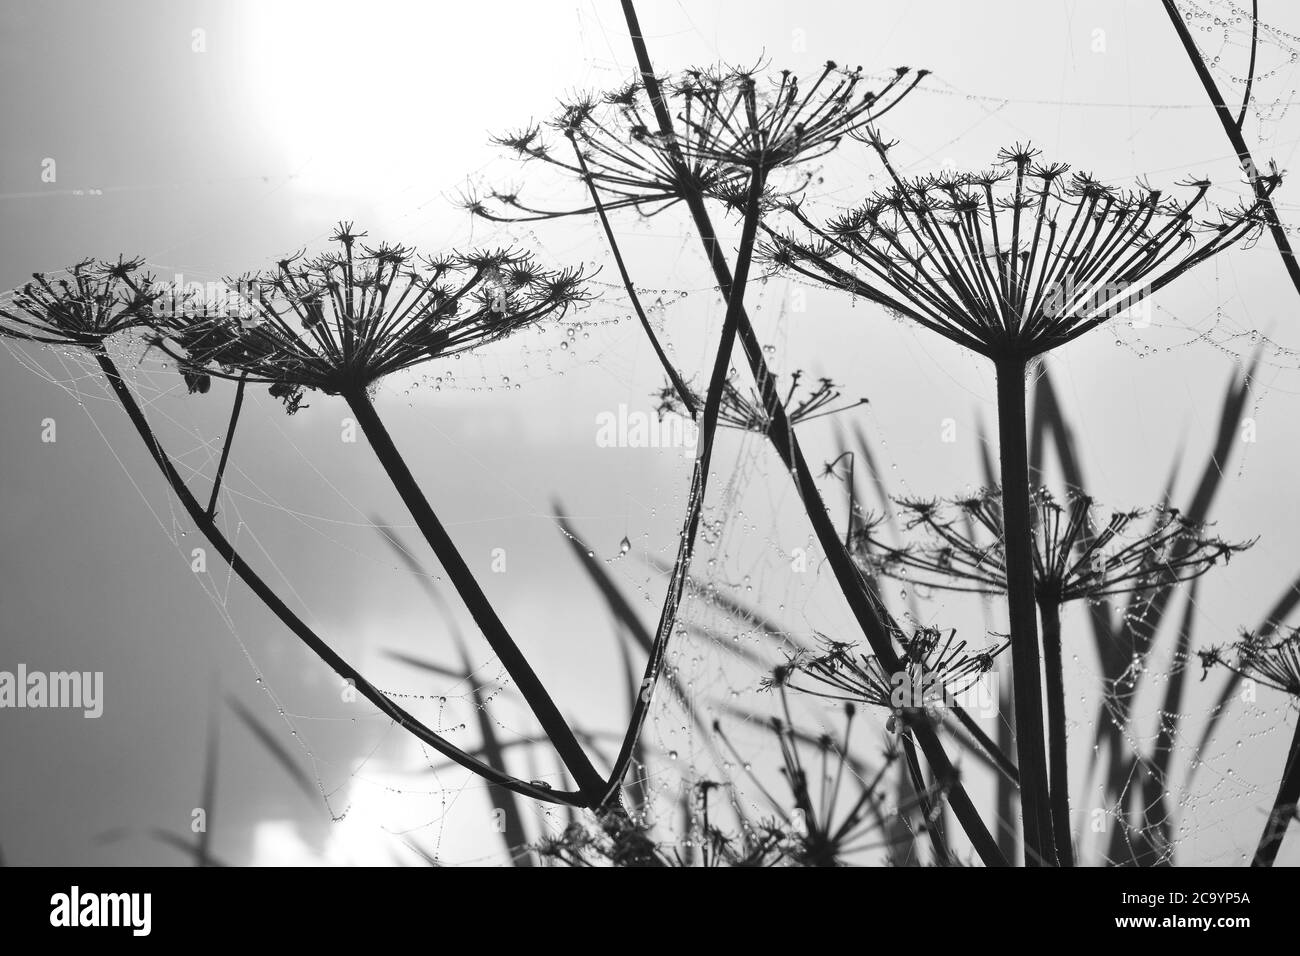 Prise de vue en niveaux de gris de silhouettes de plantes d'herbes recouvertes d'araignée web Banque D'Images